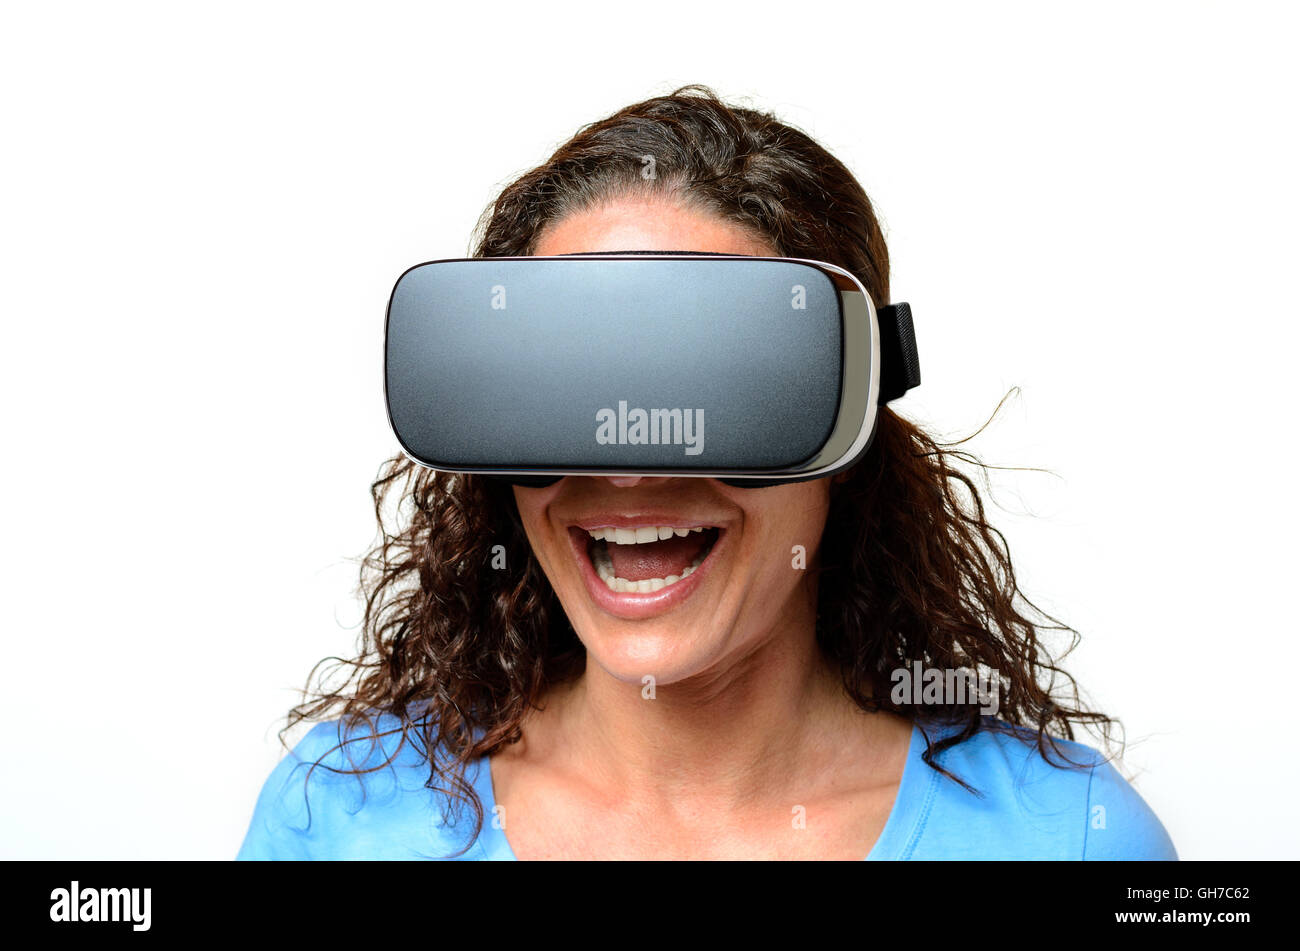 Femme portant une paire de lunettes de réalité virtuelle alors qu'elle est en train de rire Banque D'Images